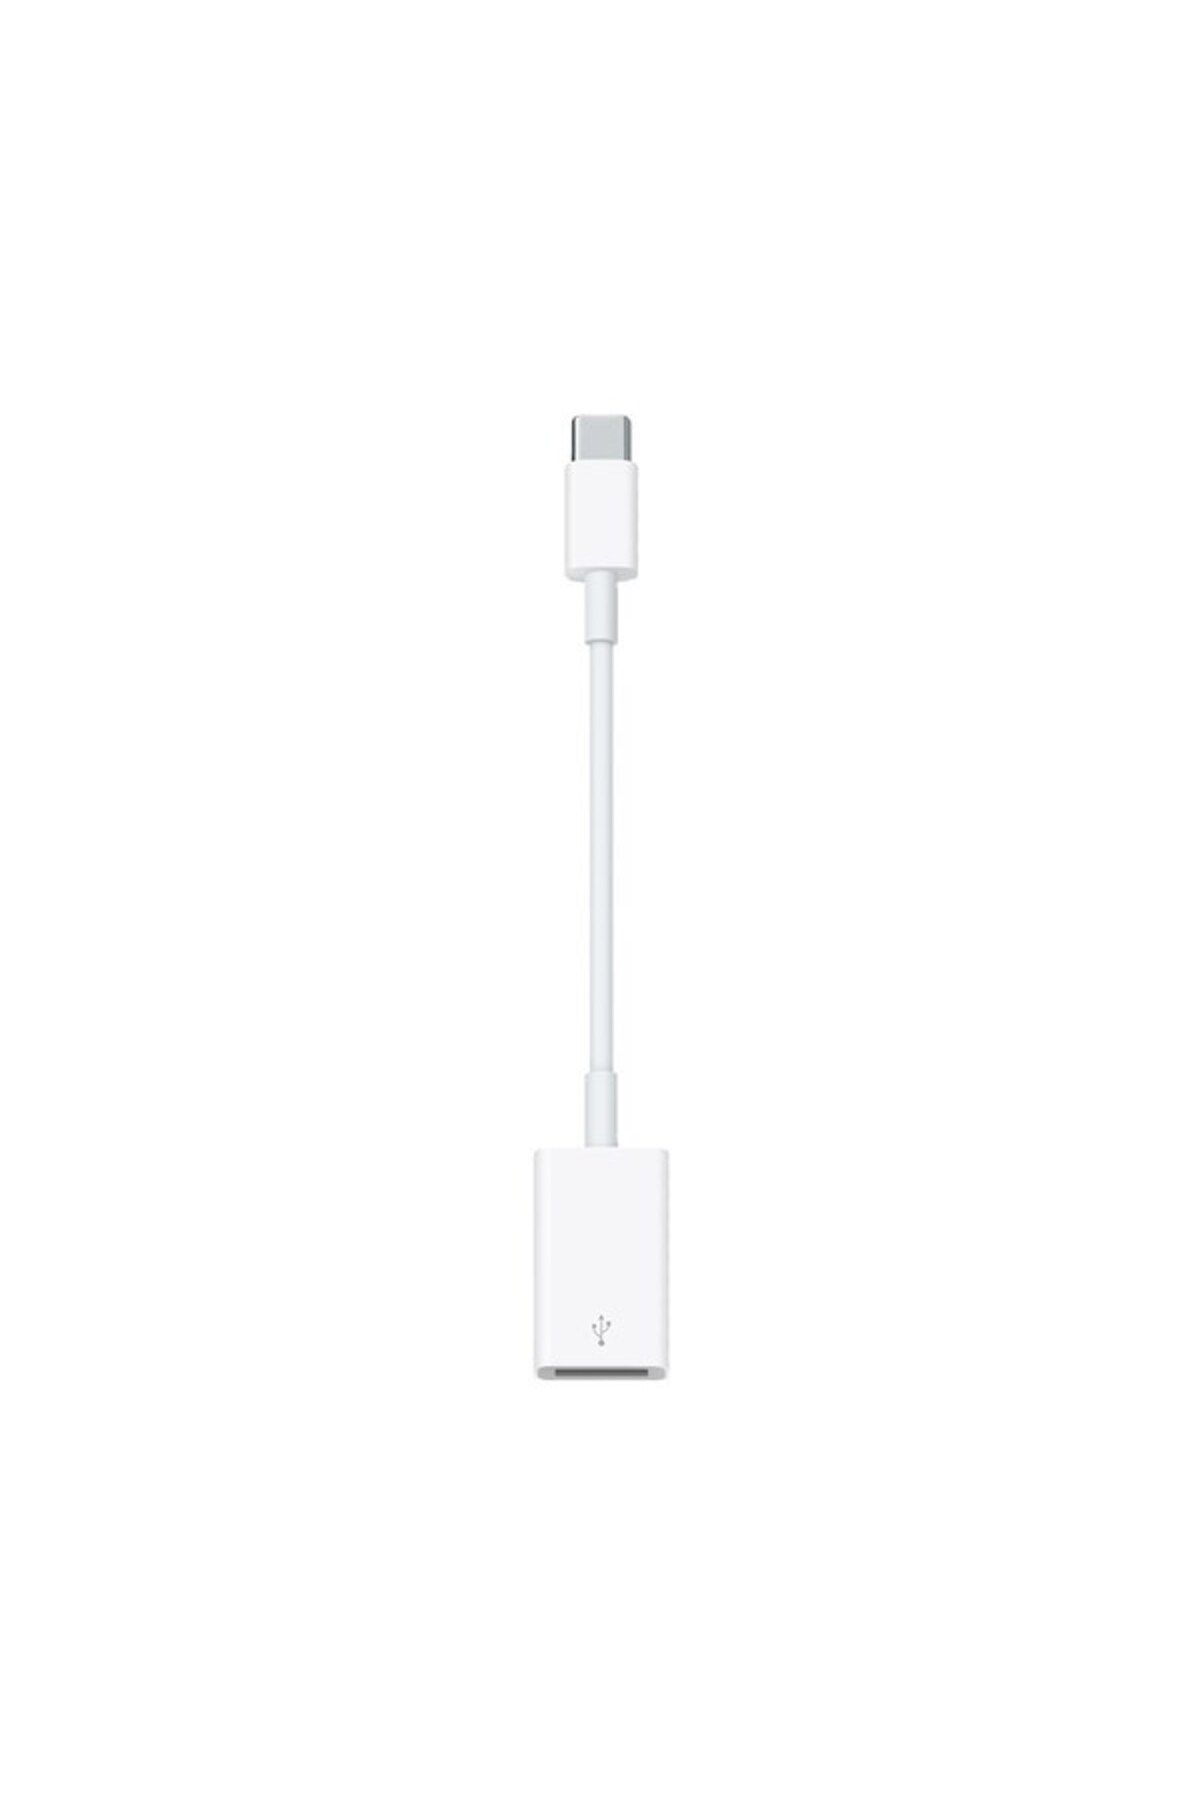 Apple USB C TO LIGHTNING DÖNÜŞTÜRÜCÜ ADAPTÖR